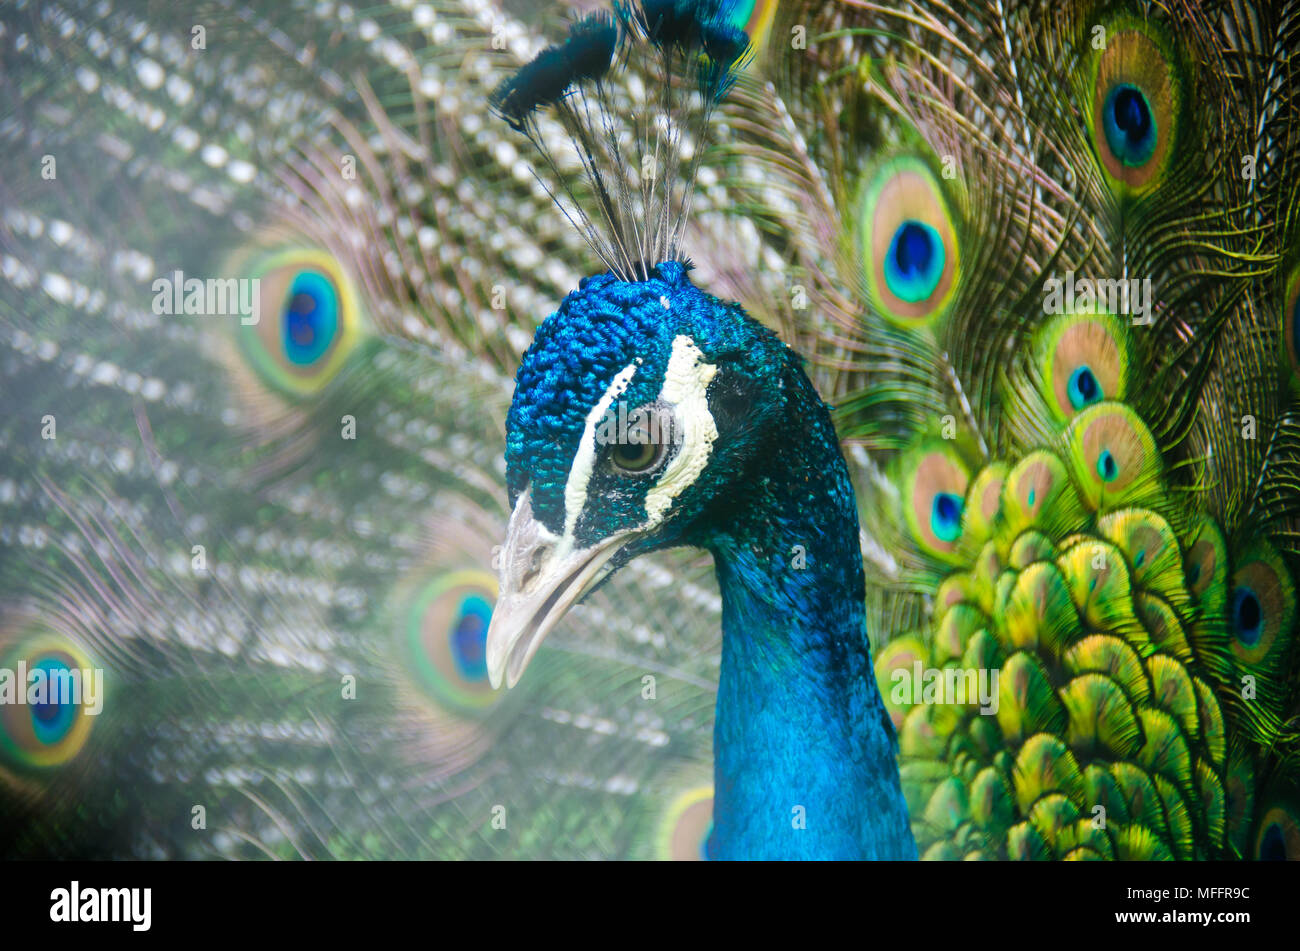 Exotischen Vogel mit grünen und blauen Federn Nahaufnahme Stockfotografie -  Alamy